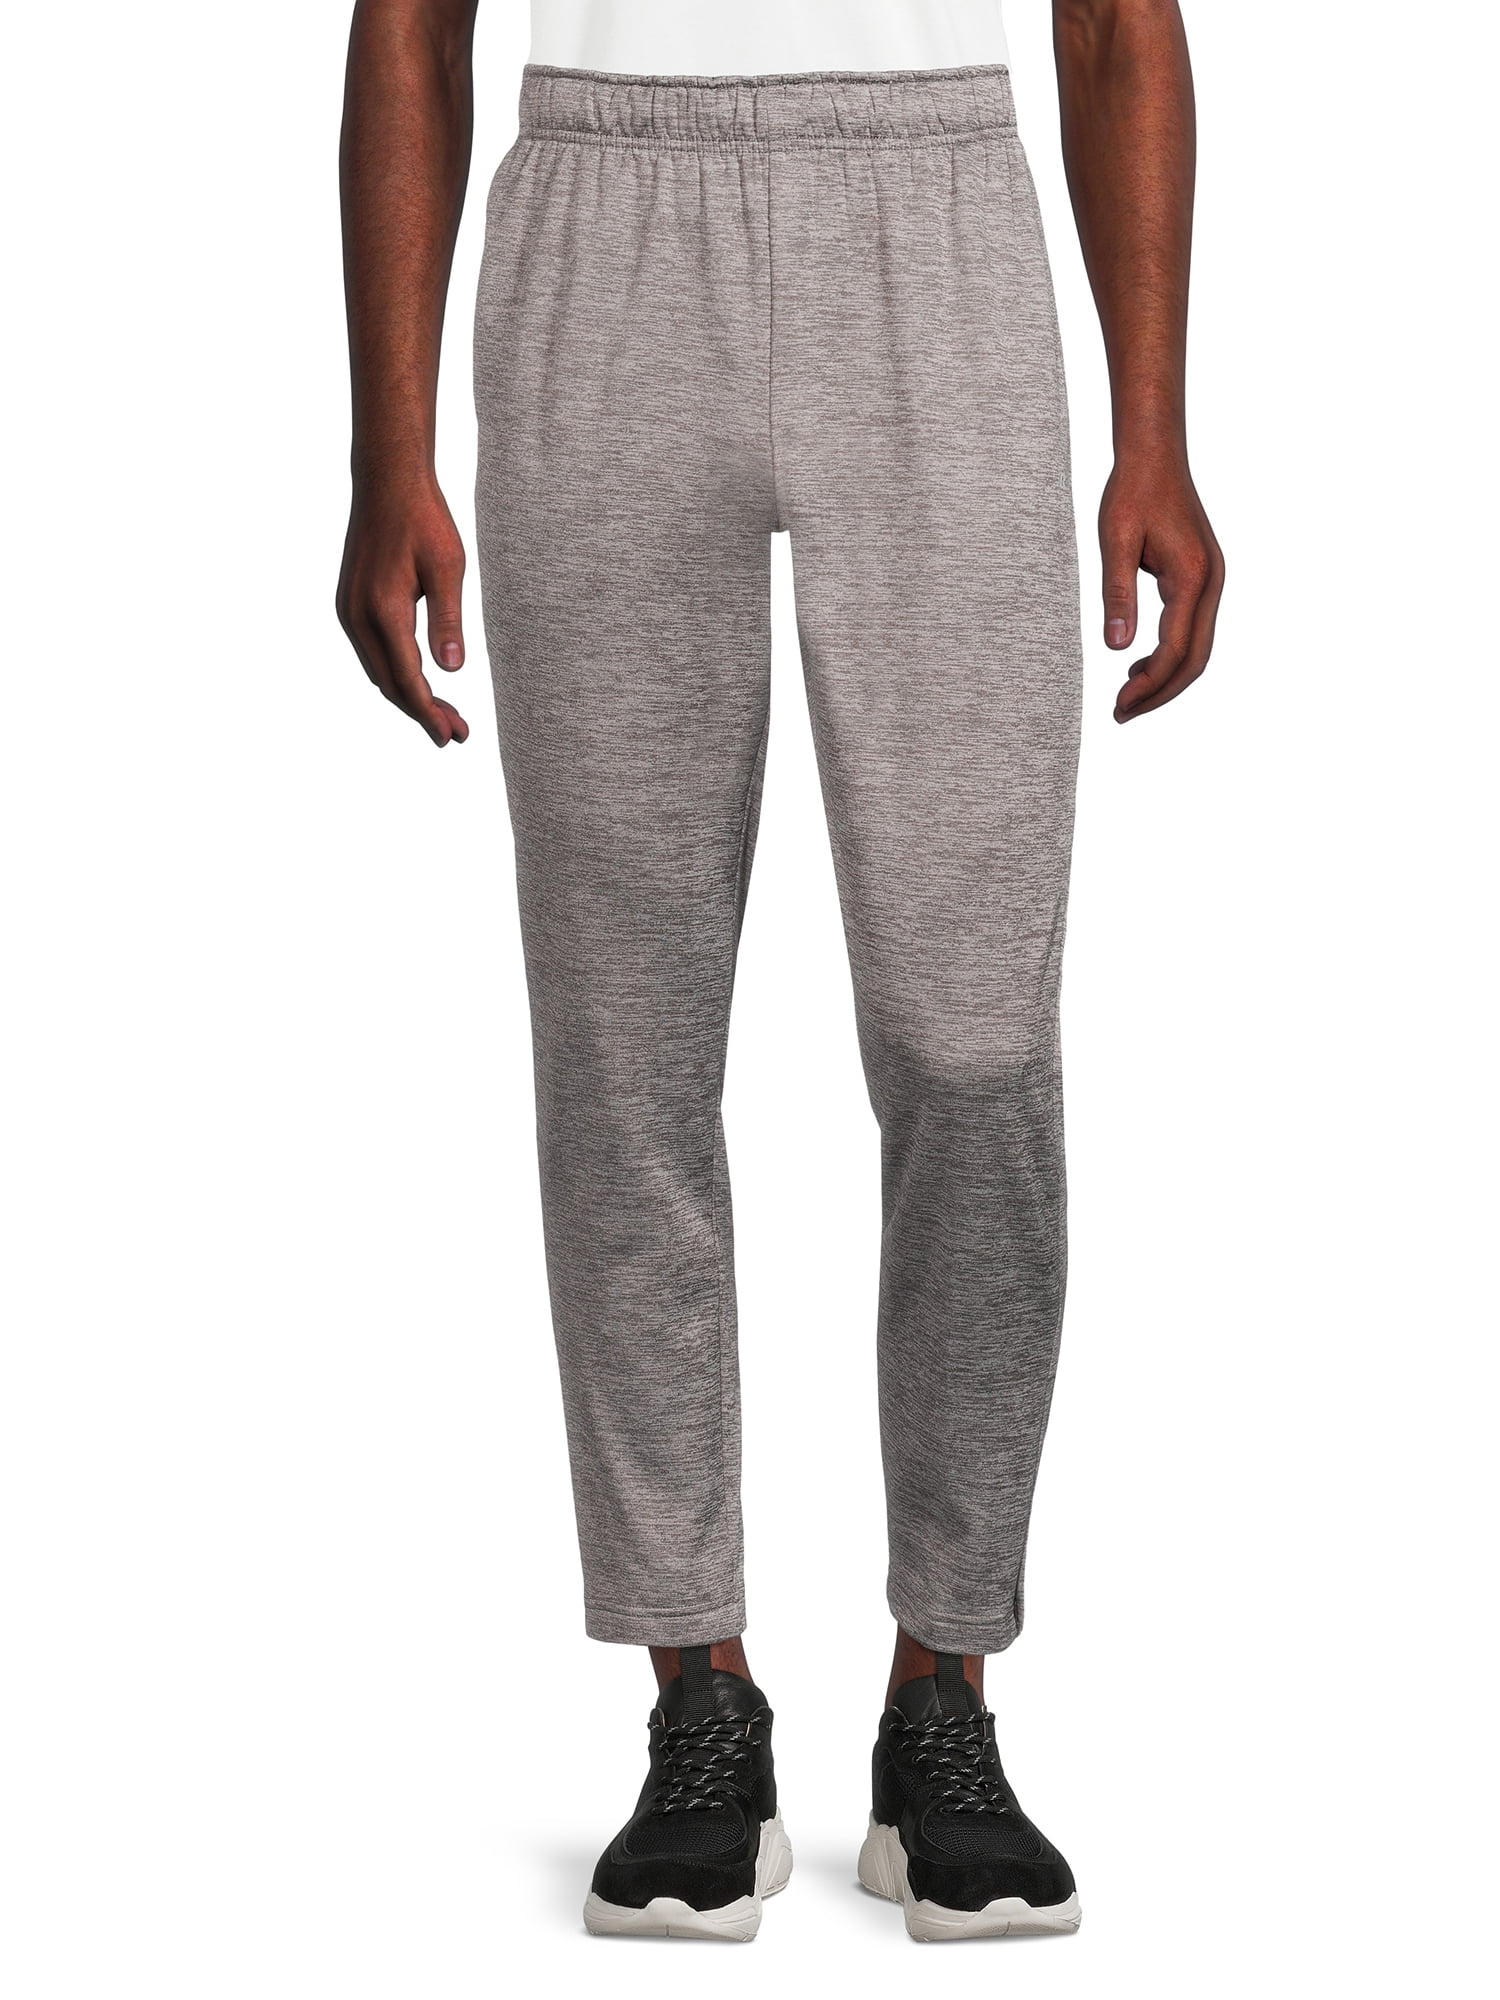 Russell Men’s Tech Fleece Pants, up to size 3XL - Walmart.com